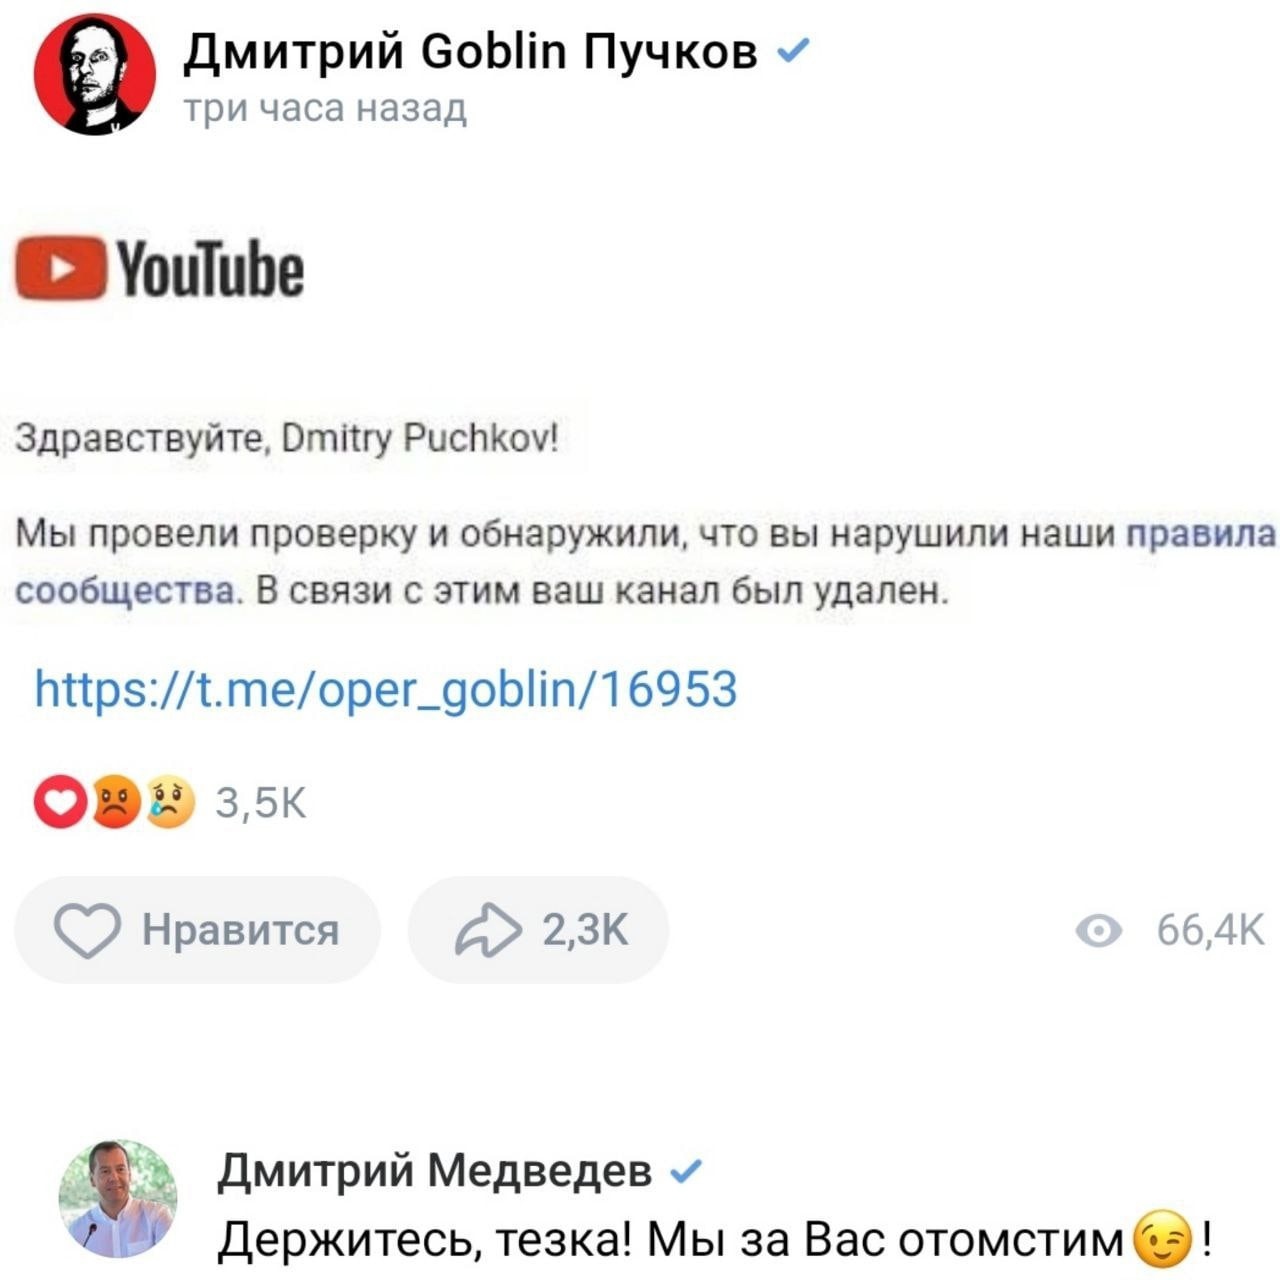 «Держитесь, тёзка!» Дмитрий Медведев пообещал отомстить за блокировку канала Гоблина Пучкова